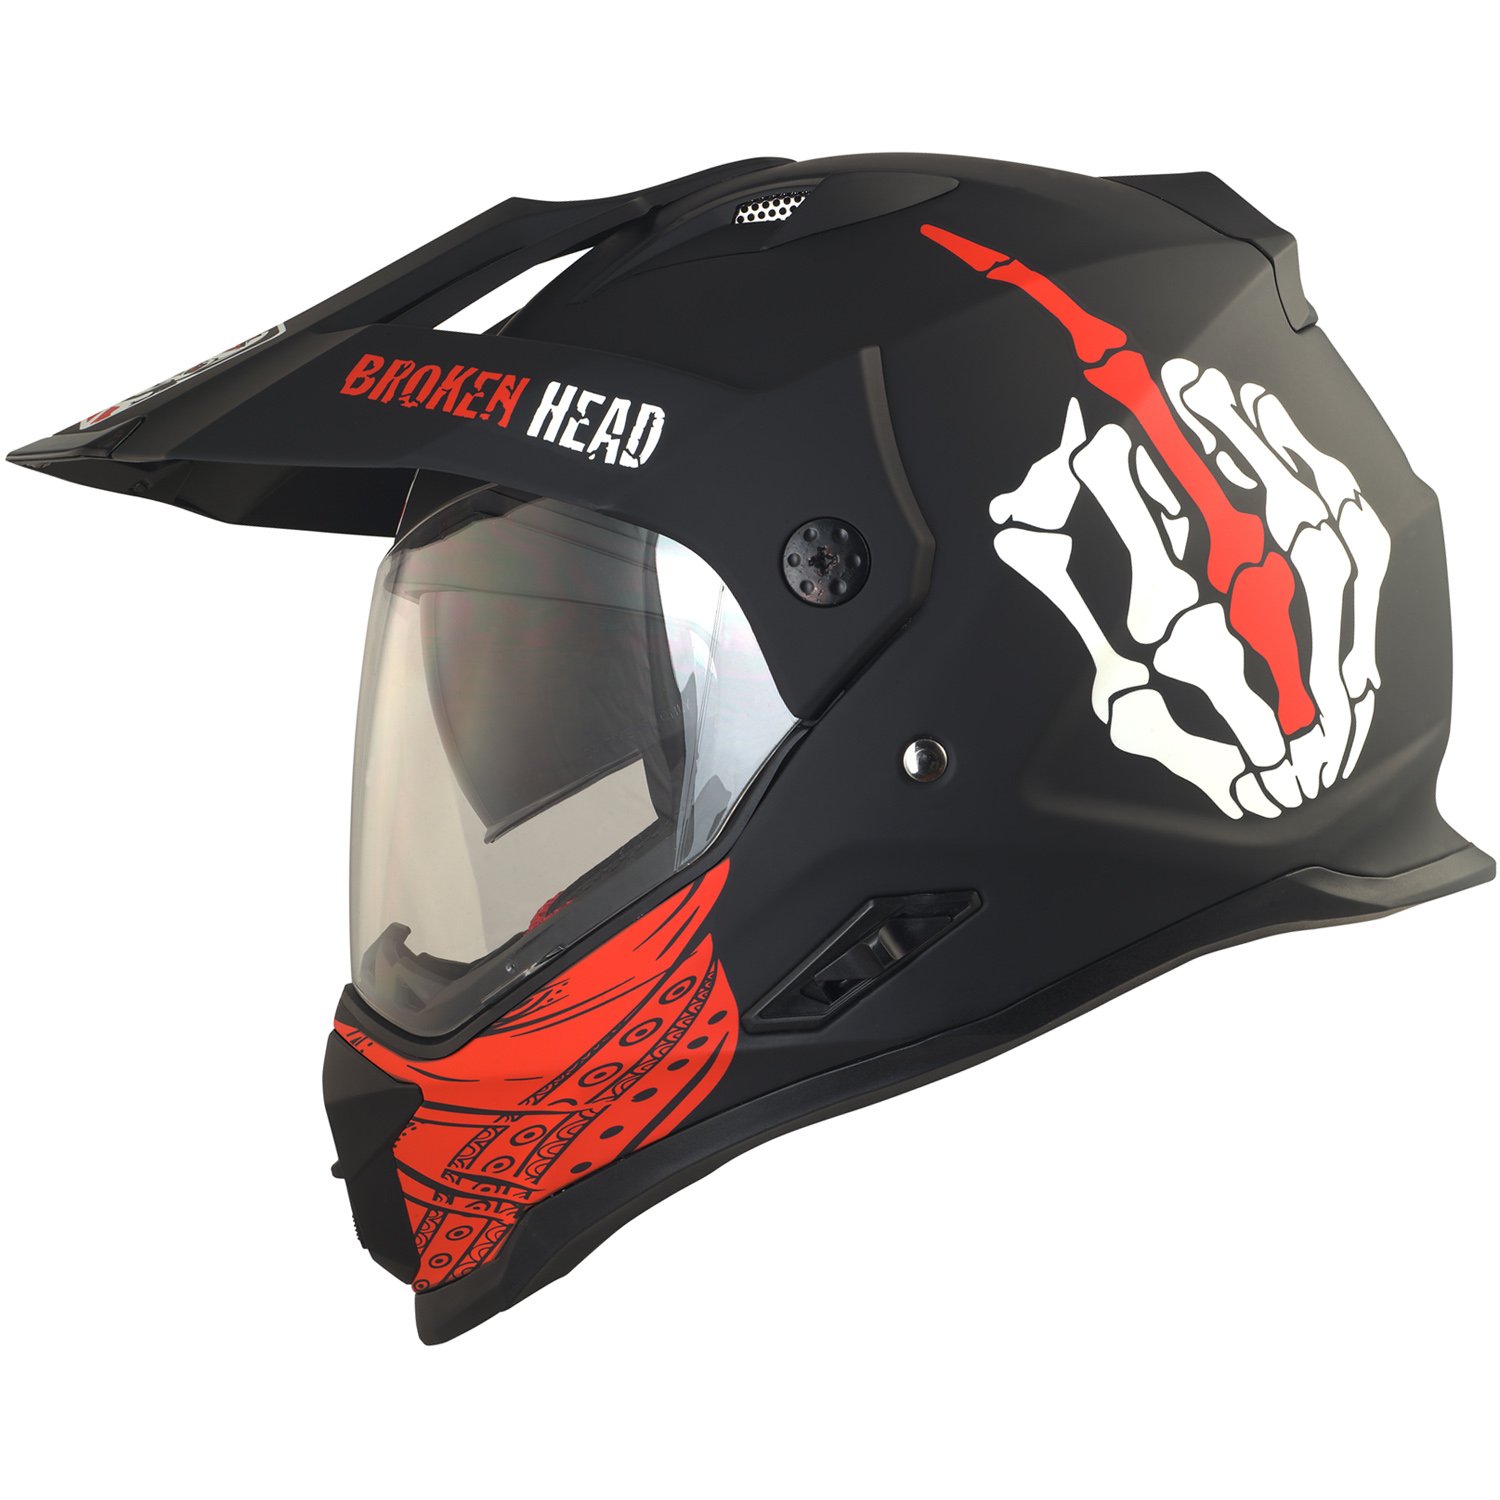 Broken Head Street Rebel Motocross-Helm rot mit Visier - Enduro-Helm - MX Cross-Helm mit Sonnenblende - Quad-Helm (L 59-60 cm) von Broken Head